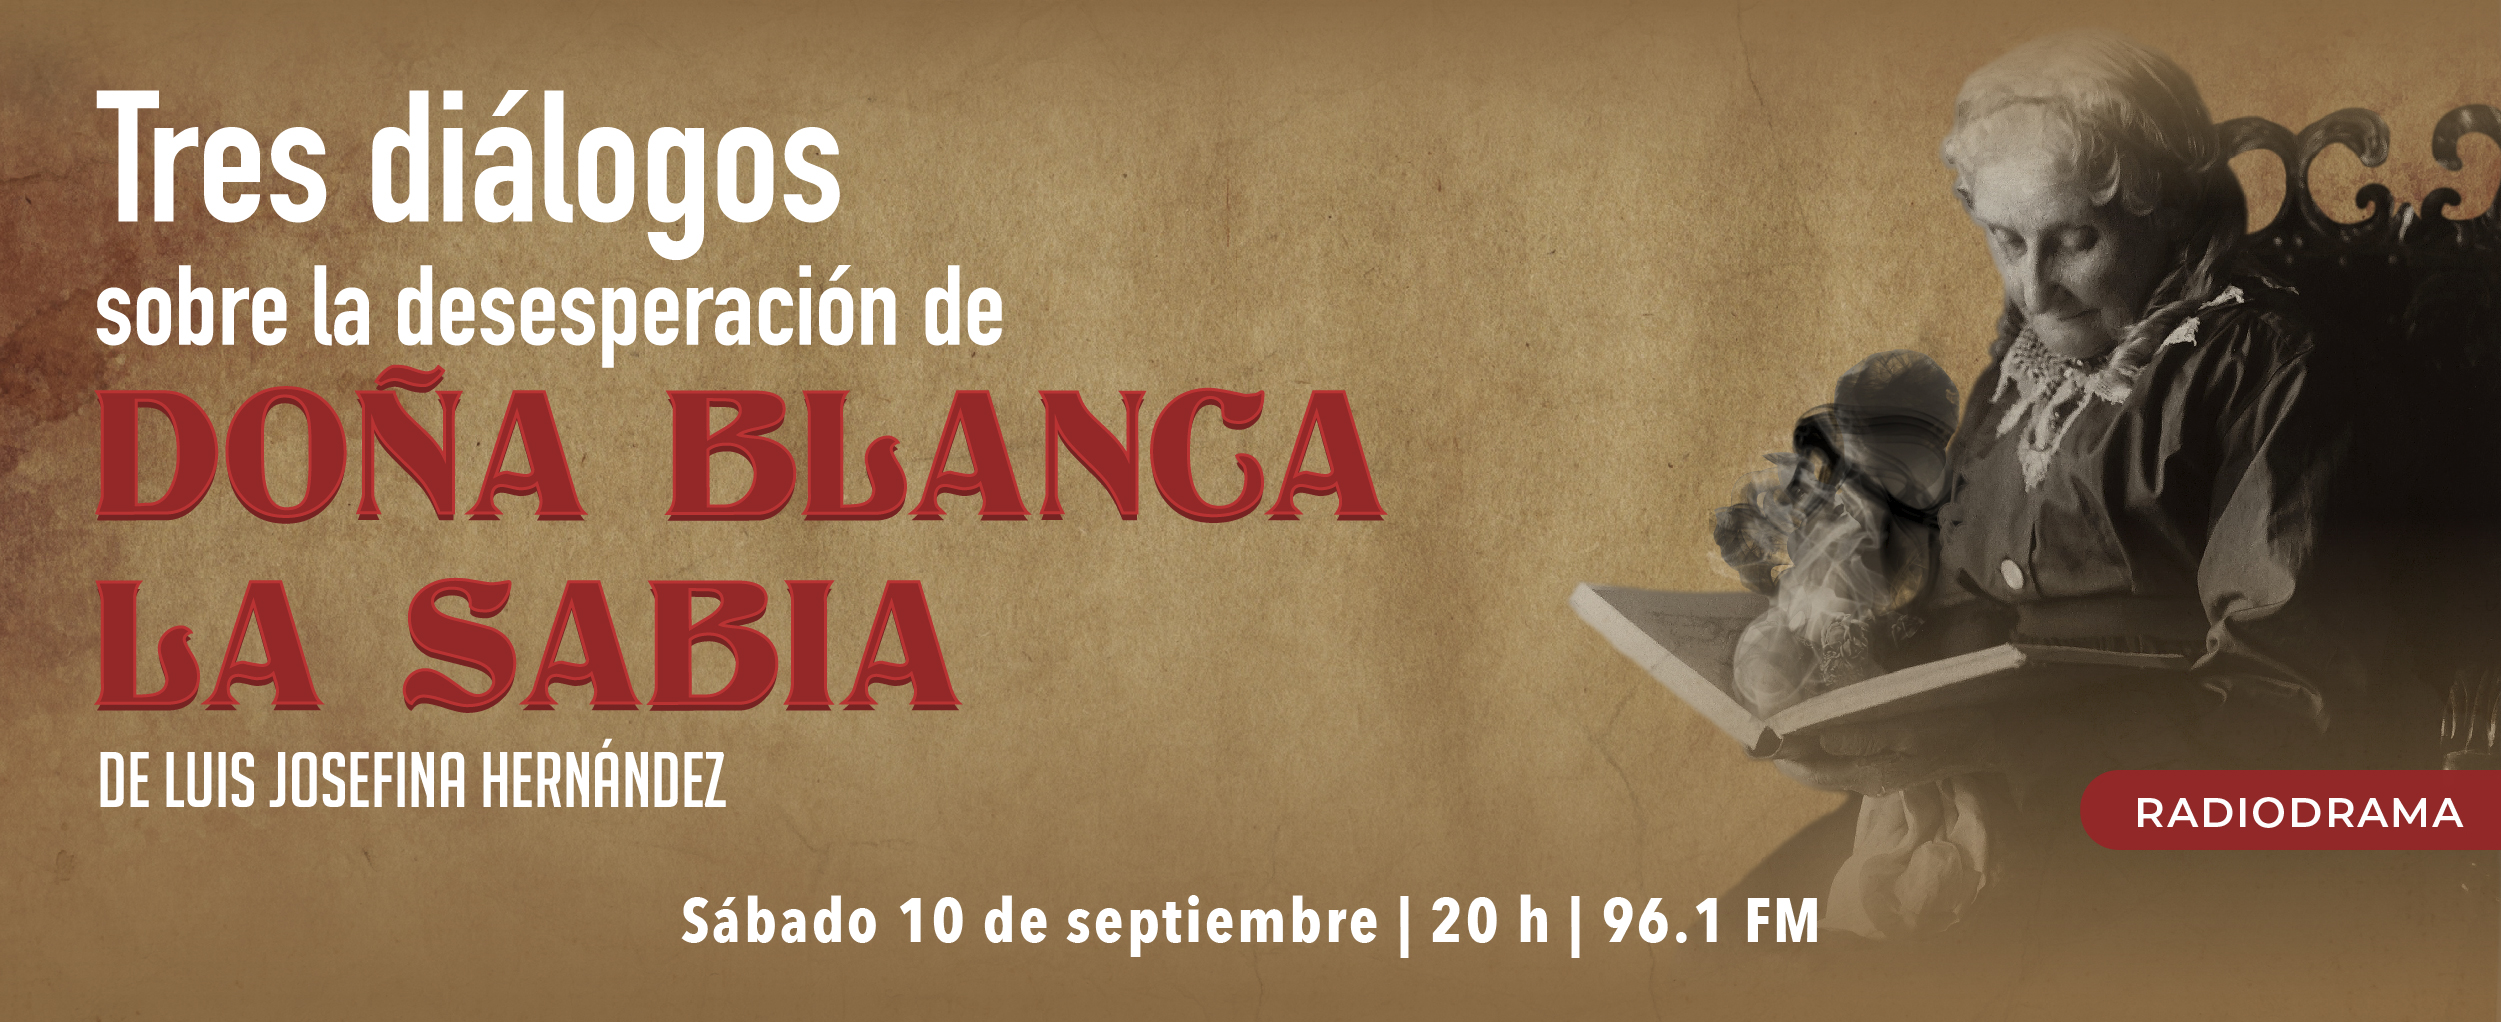 Tres diálogos sobre la desesperación de doña Blanca la Sabia, adaptación de la obra teatral de Luisa Josefina Hernández